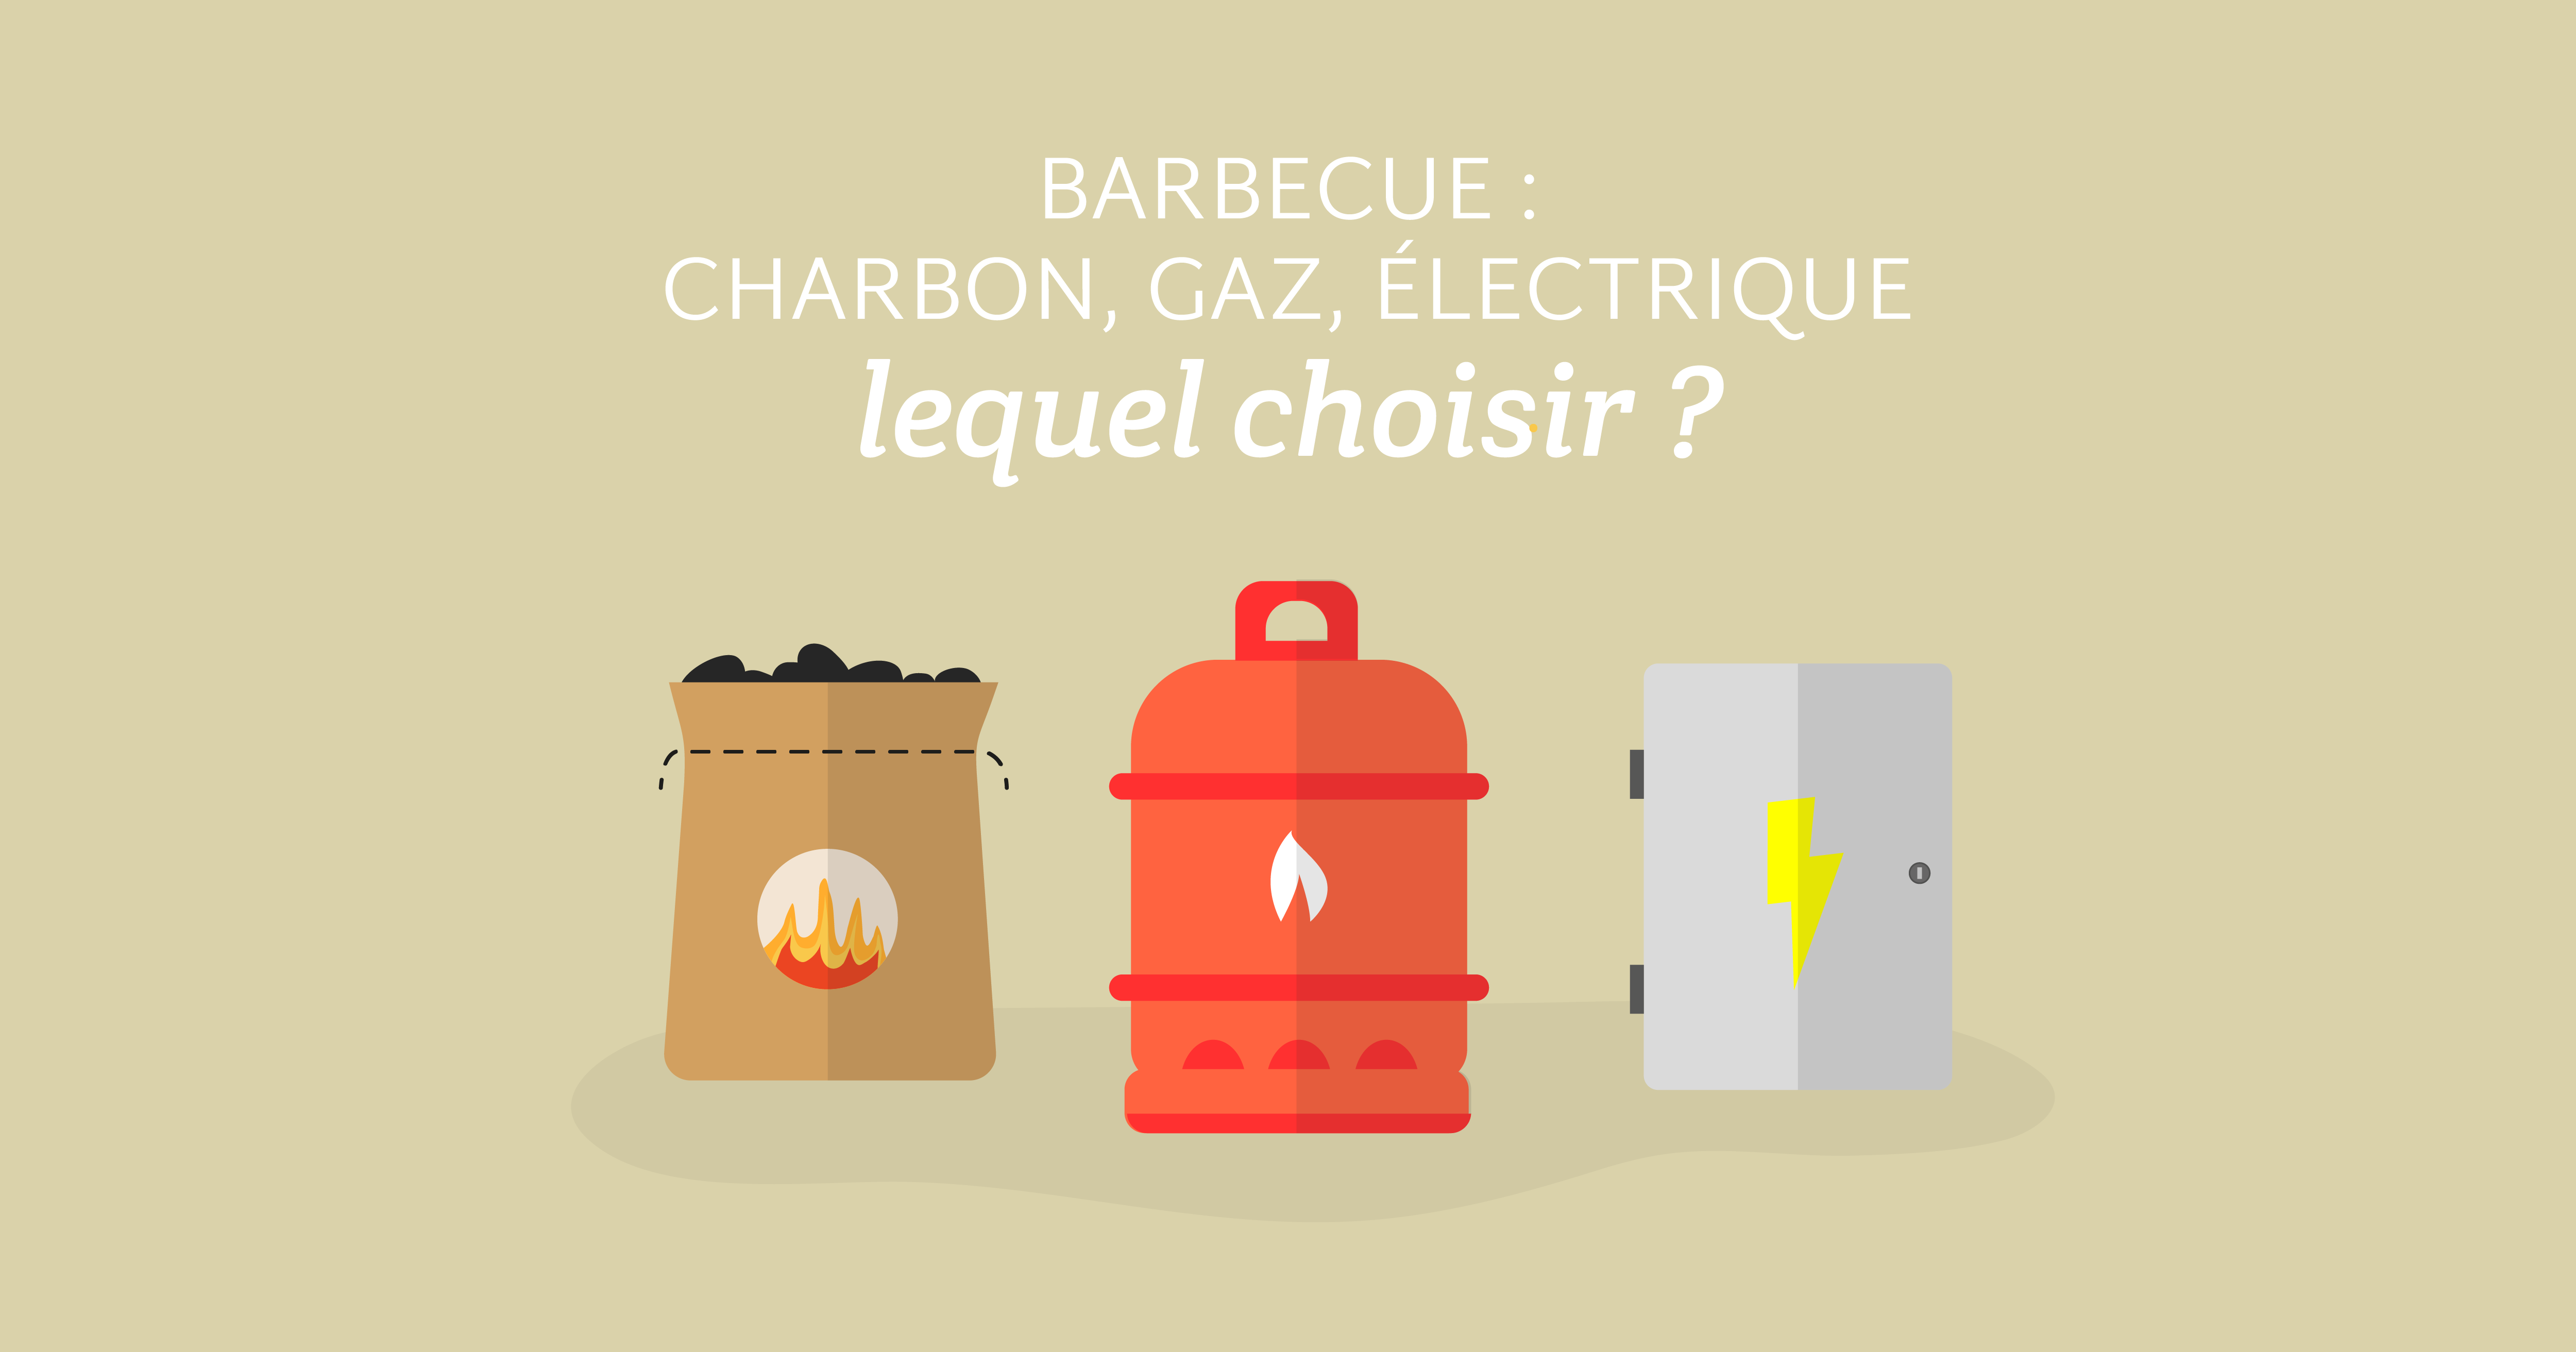 Barbecue charbon, gaz, électrique : Lequel choisir pour limiter son impact carbone ?